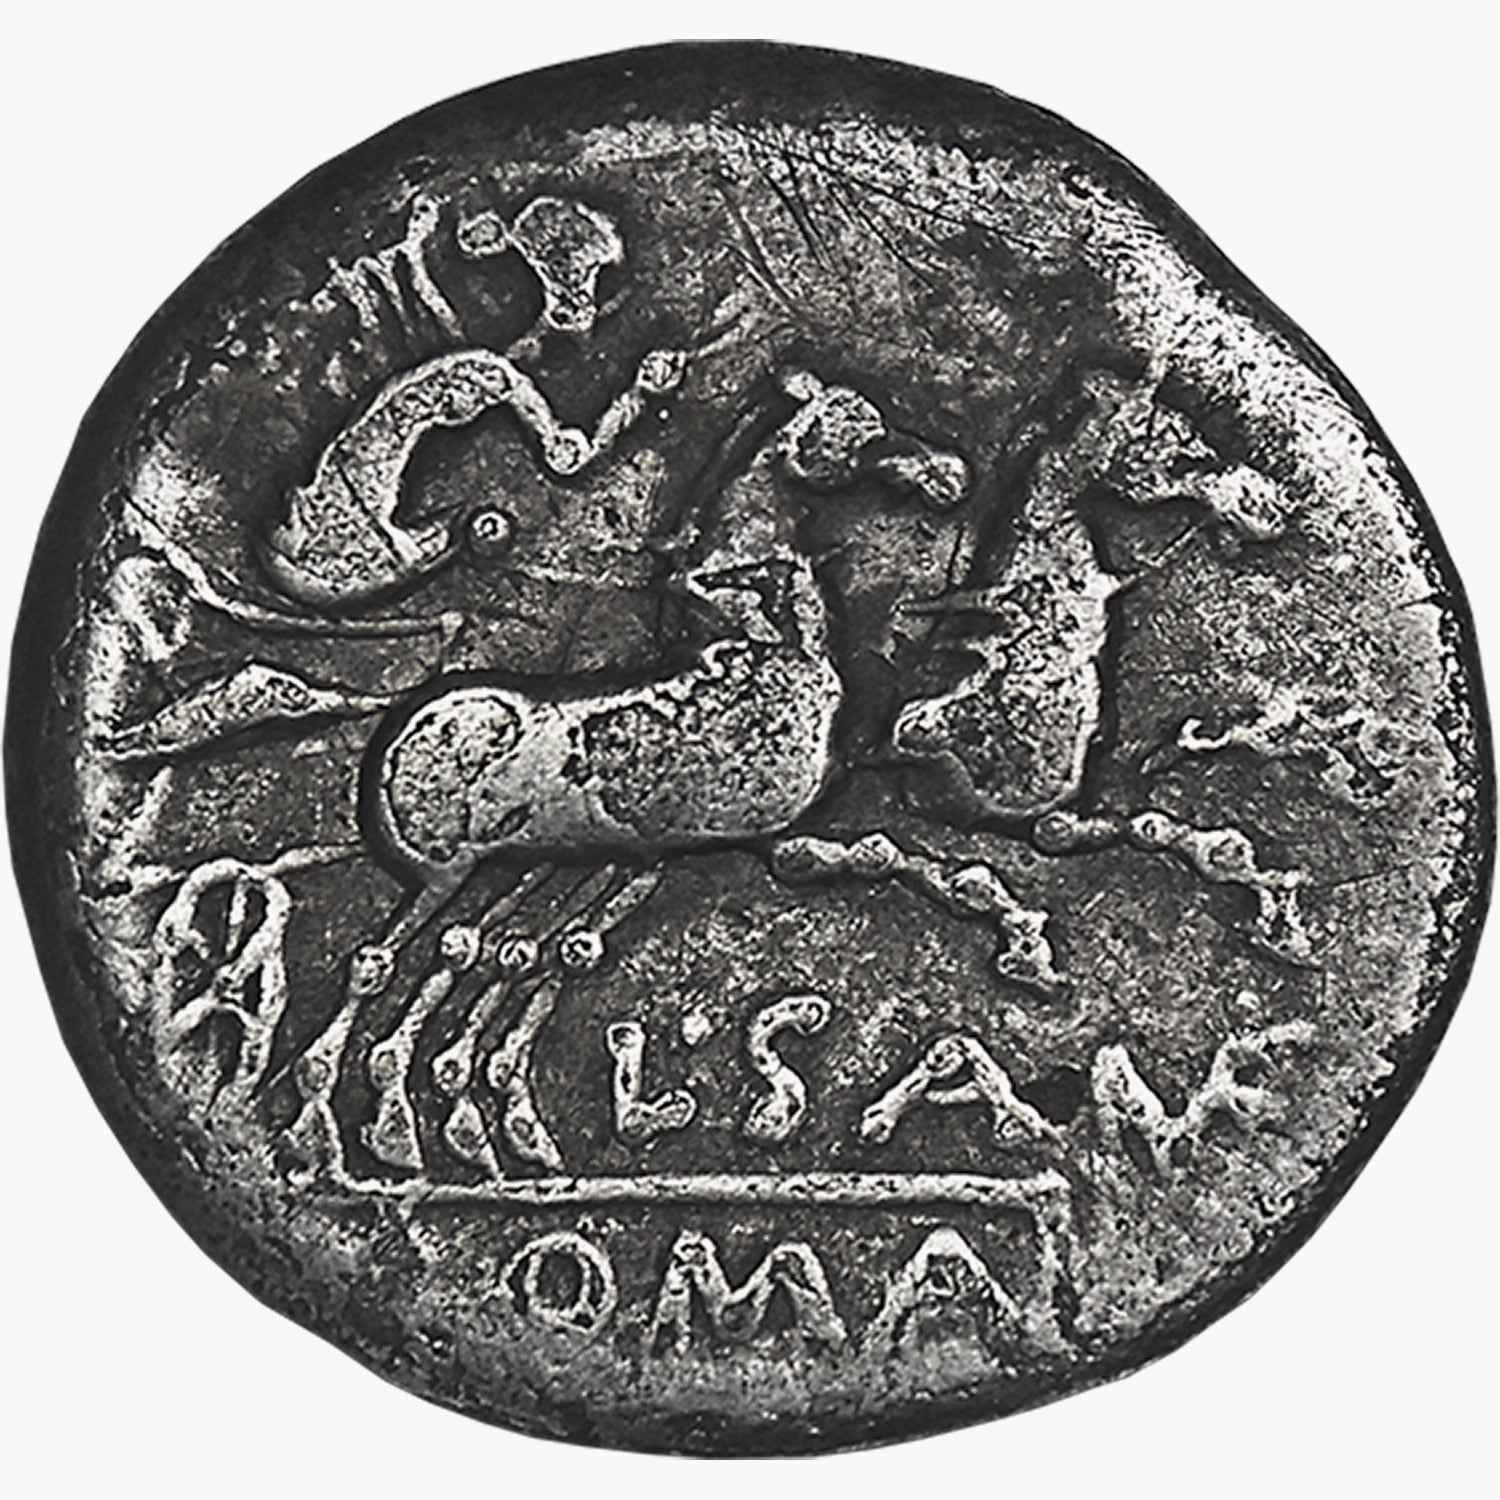 The Silver of the Roman Republic